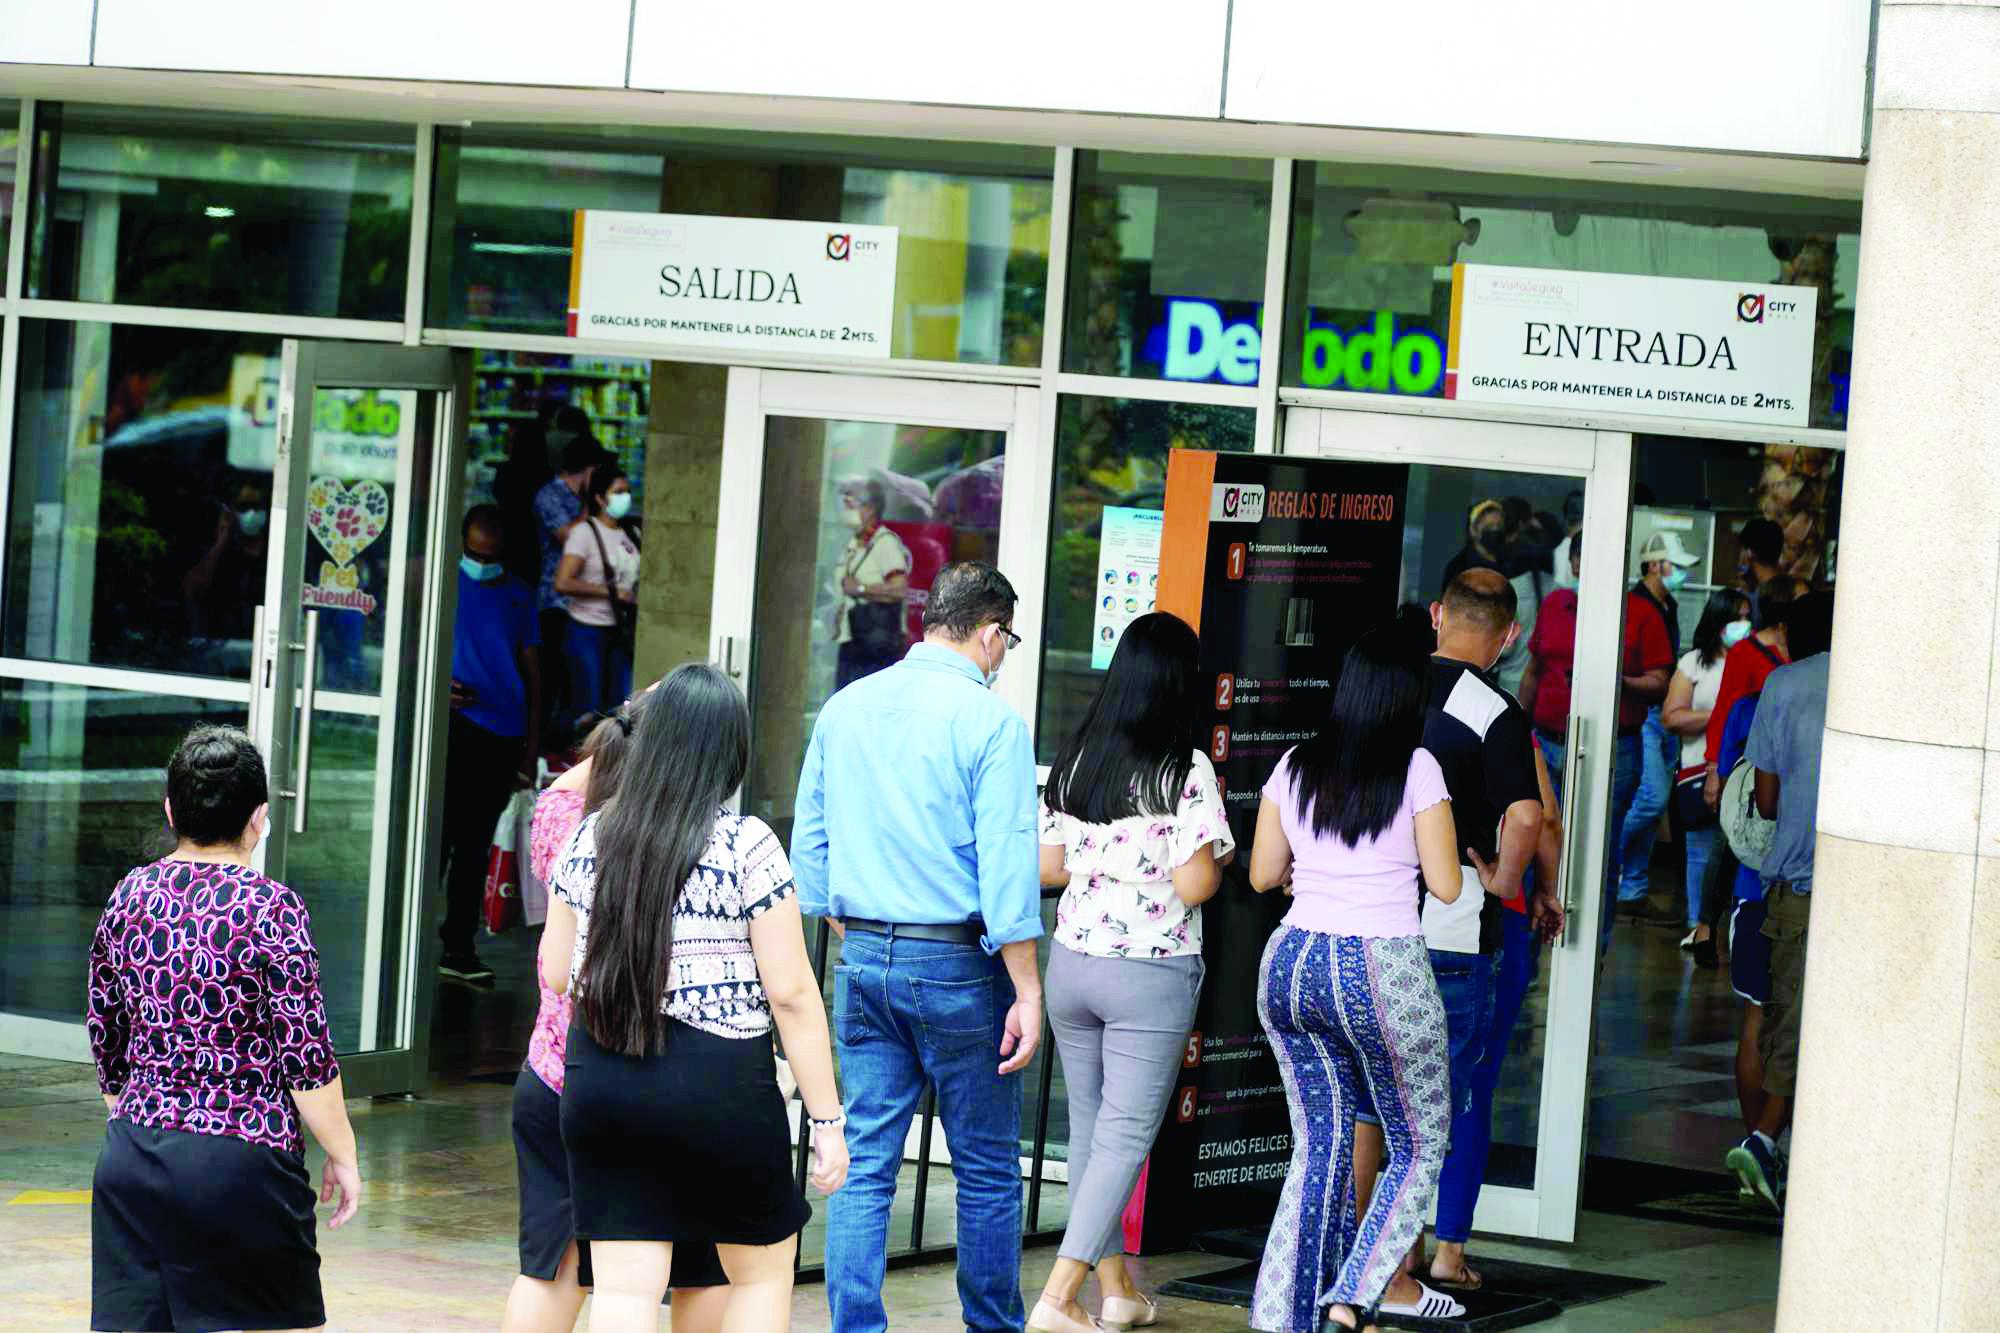 En Mega Mall, City Mall y Multiplaza hay muchas tiendas con atractivos descuentos y ofertas que atraen a los consumidores.